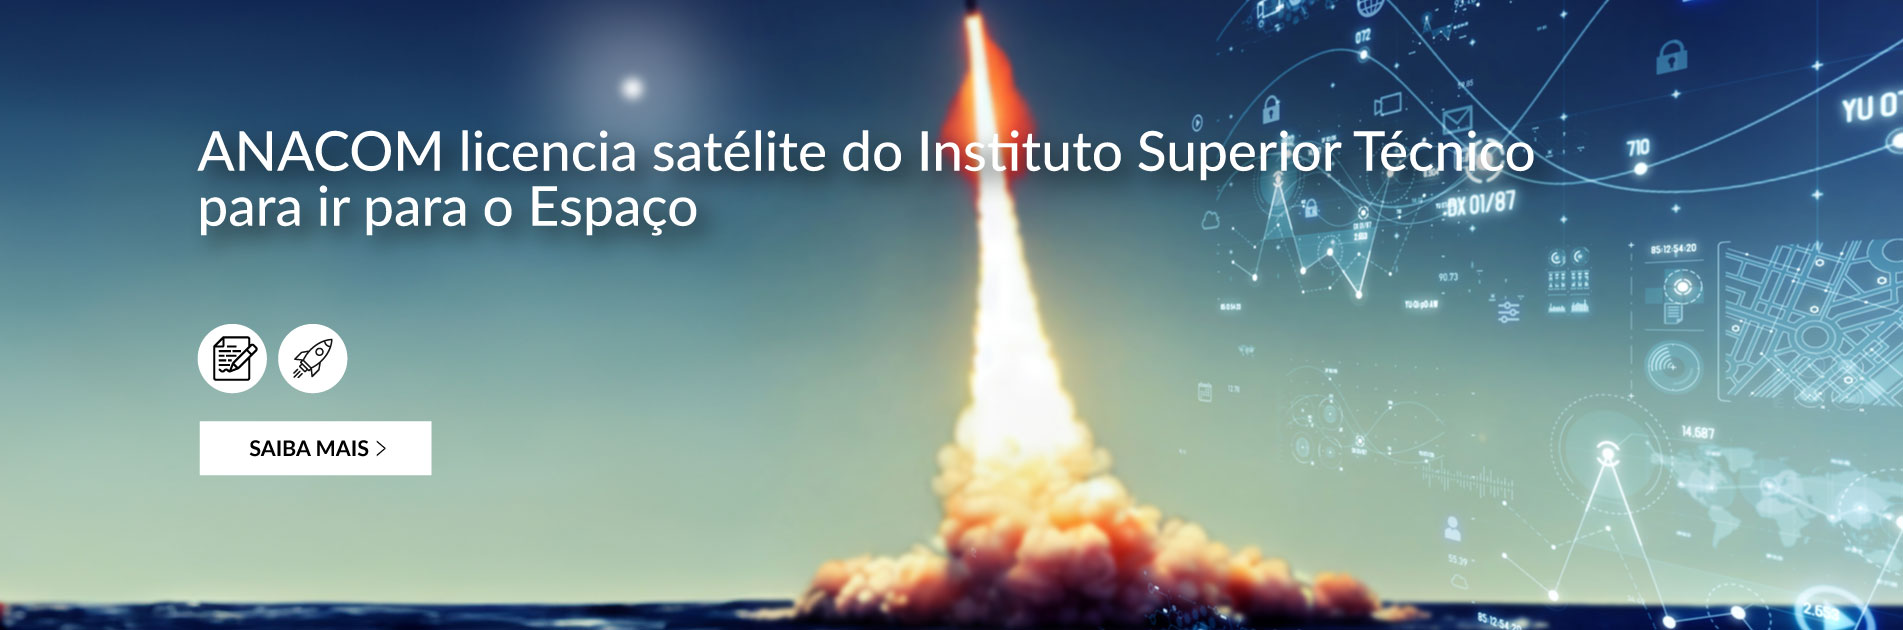 ANACOM licencia satélite do Instituto Superior Técnico para ir para o Espaço